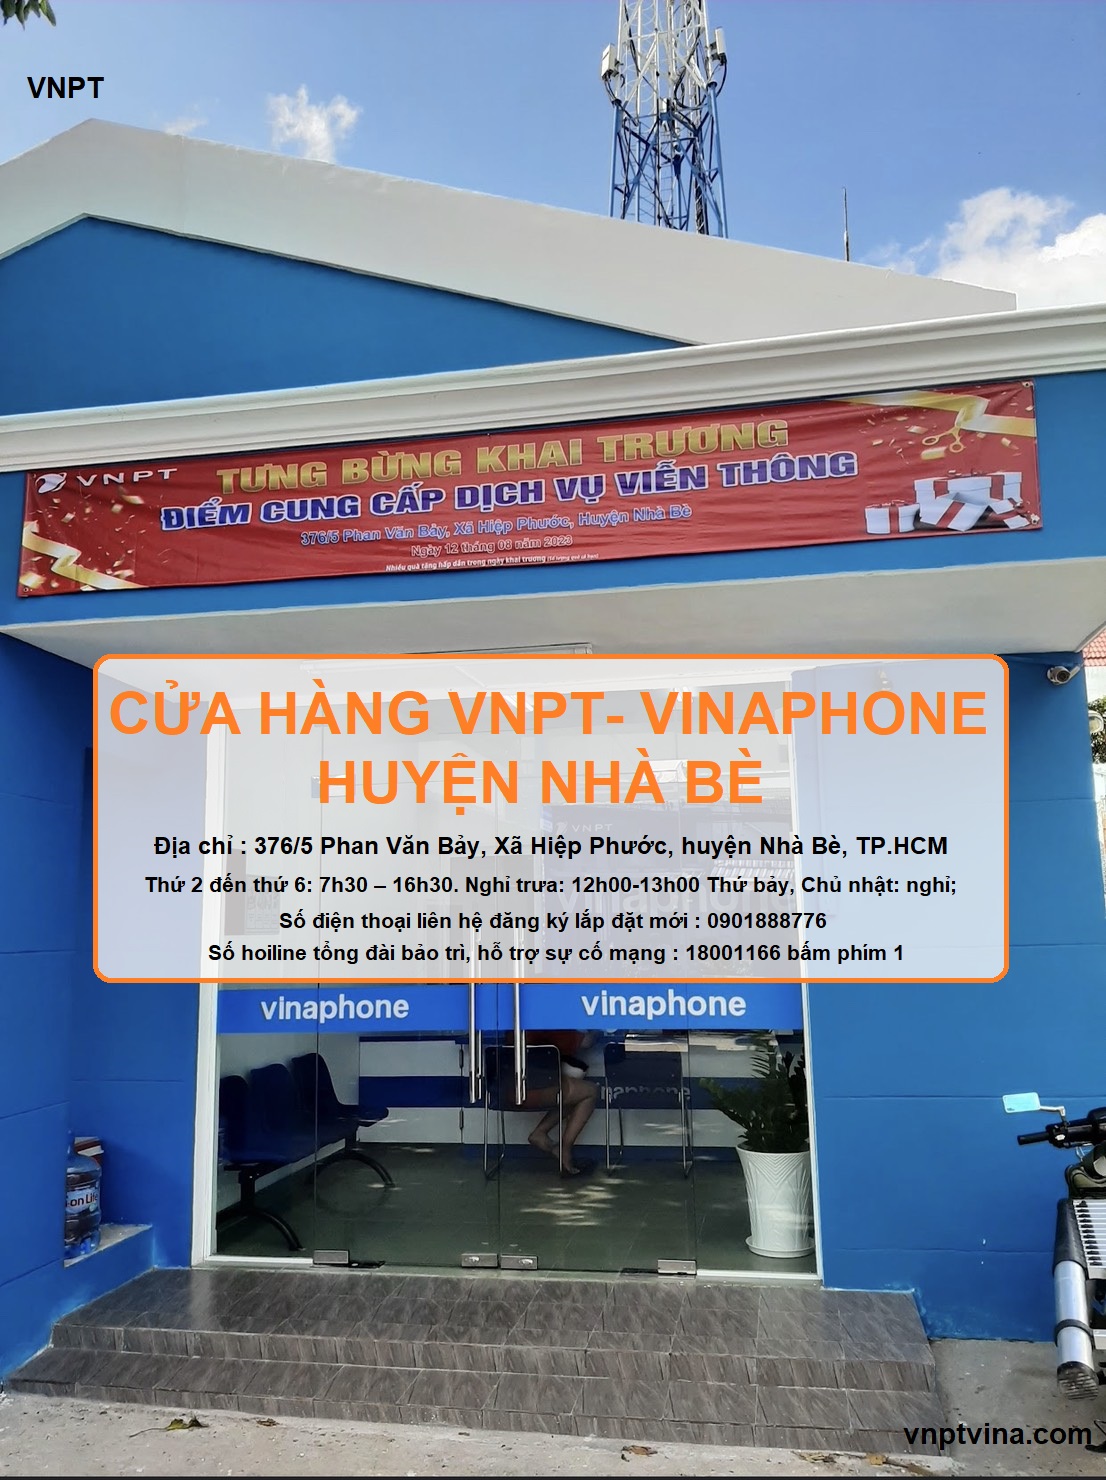 cửa hàng VNPT huyện Nhà Bè - 376/5 Phan Văn Bảy, xã Phước Hiệp, huyện Nhà Bè TPHCM